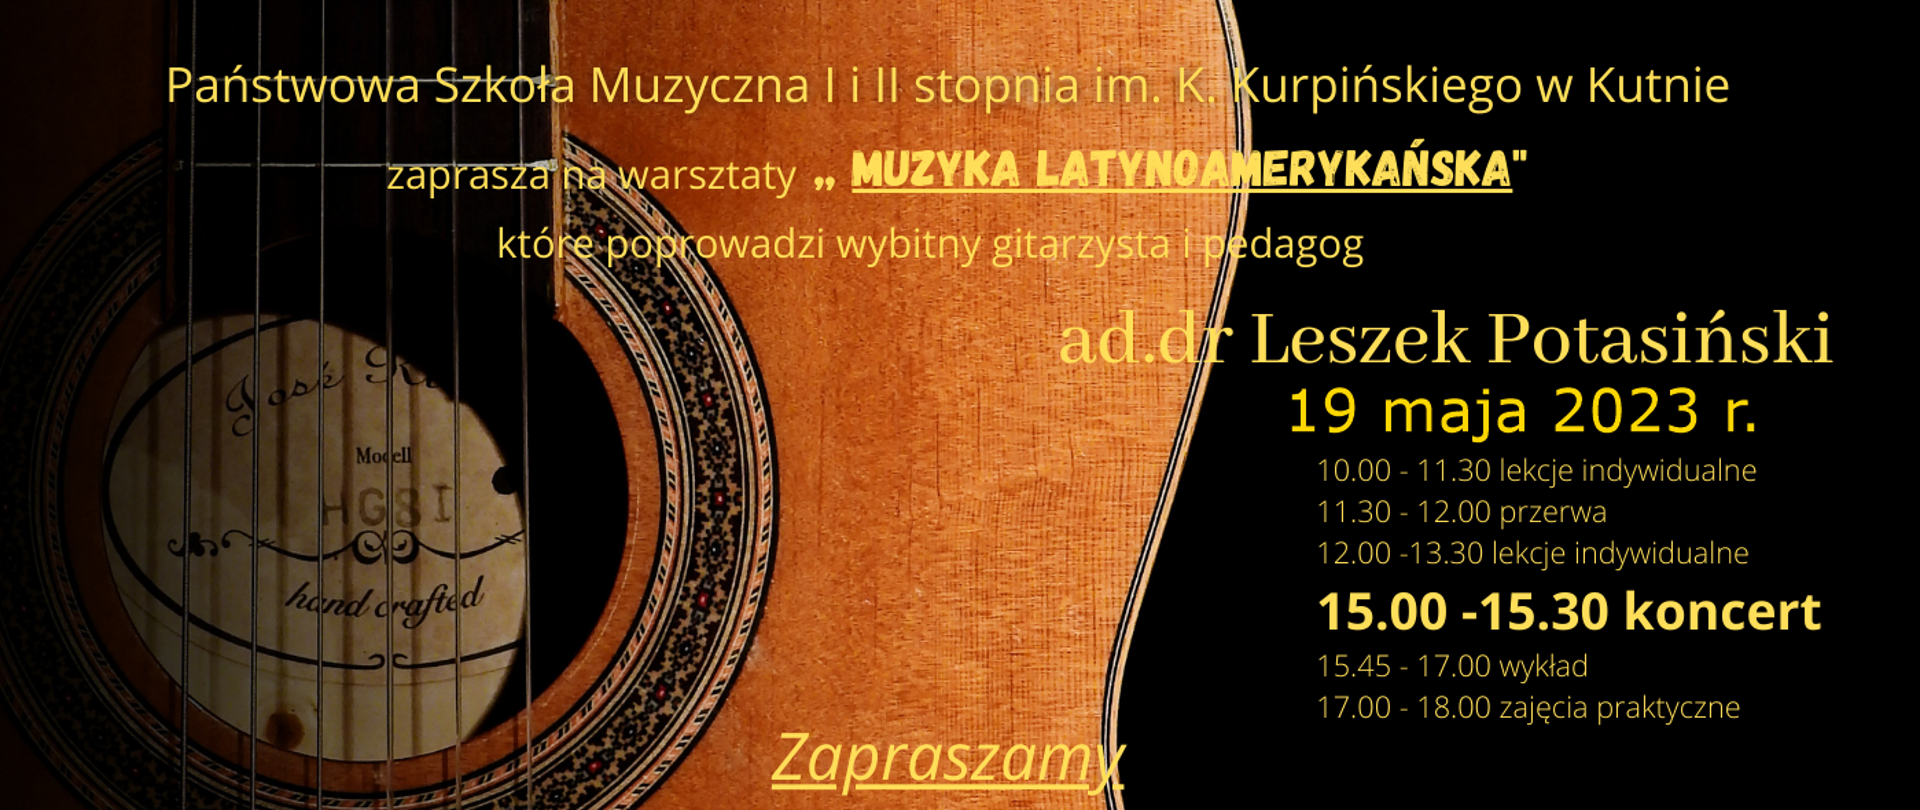 na czarnym tle grafika przedstawiająca gitarę klasyczną, z prawej strony plakatu napis w kolorze żółtym - PSM w Kutnie, zaprasza na warsztaty "Muzyka Latynoamerykańska", które poprowadzi Leszek Potasiński, 19 maja 2023, 15.00 - 15.30 koncert